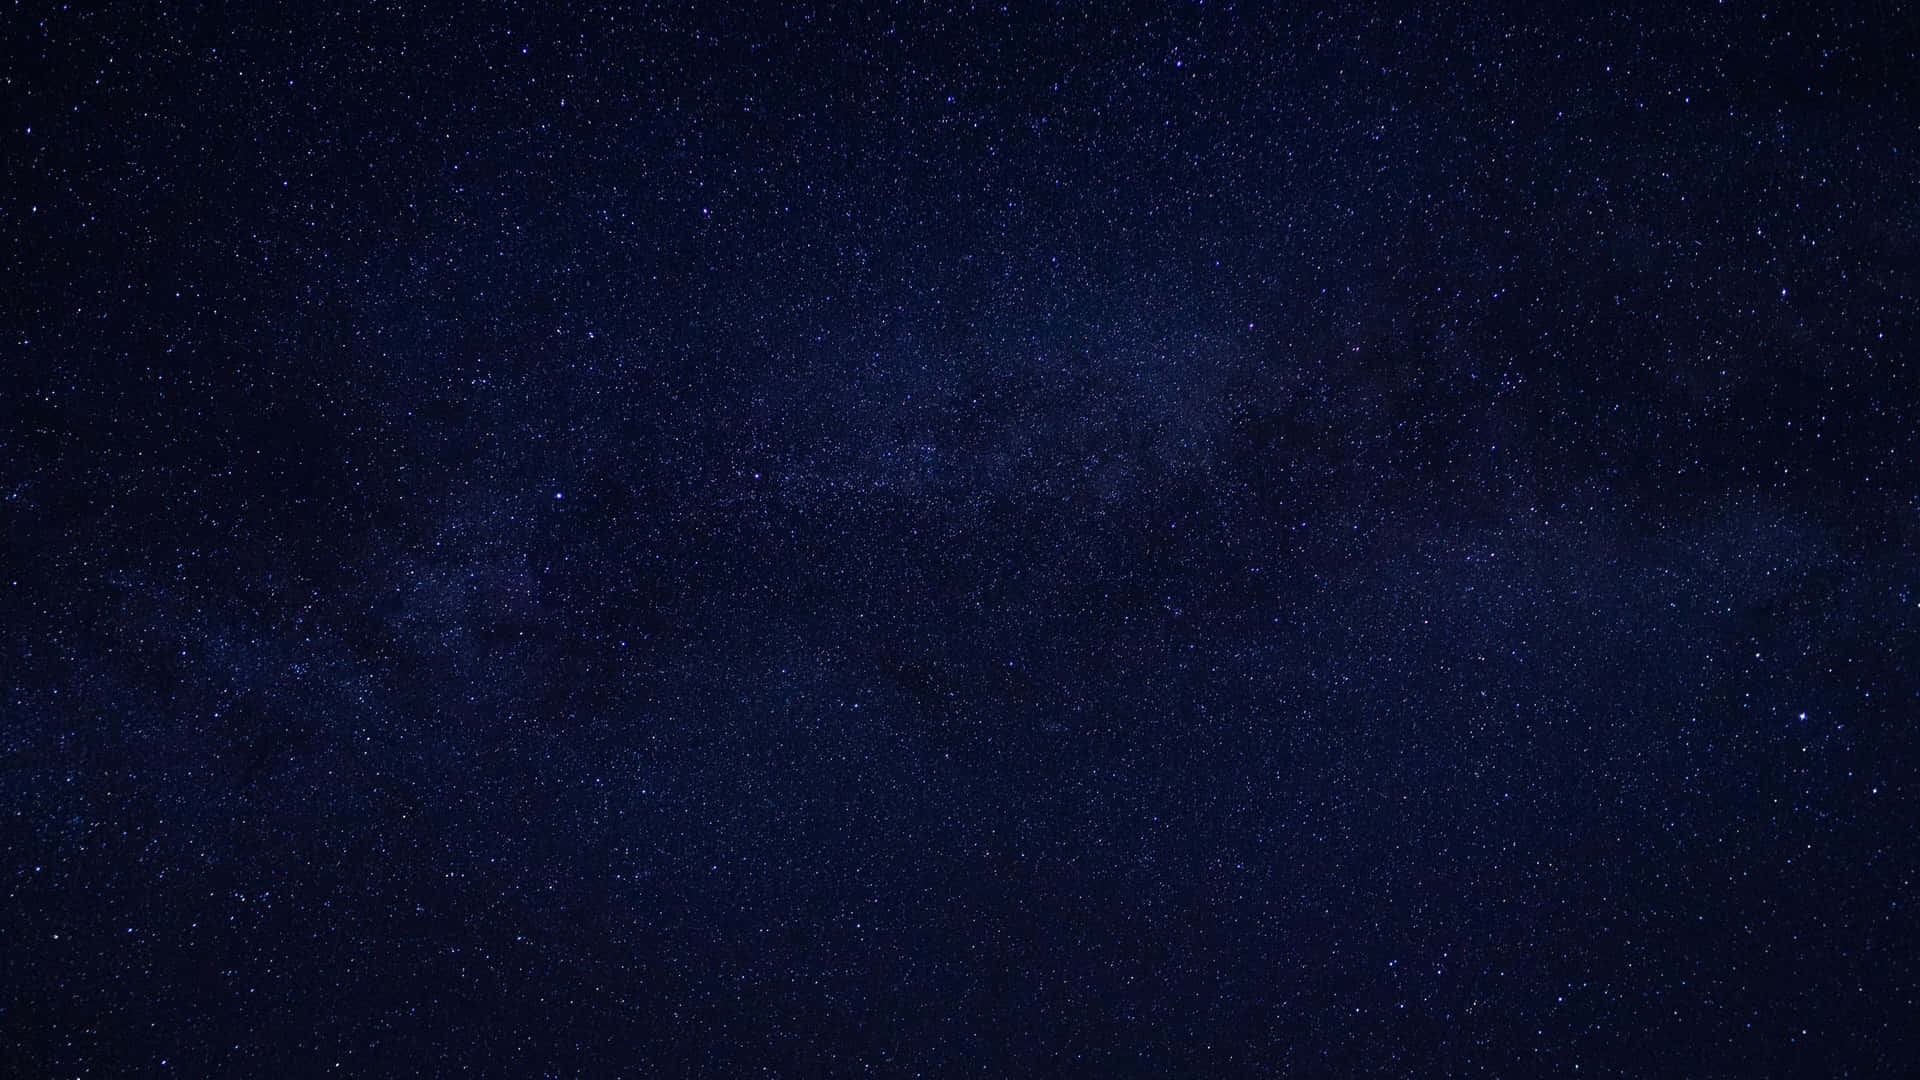 Uncielo Nocturno Oscuro Con Estrellas Y La Vía Láctea